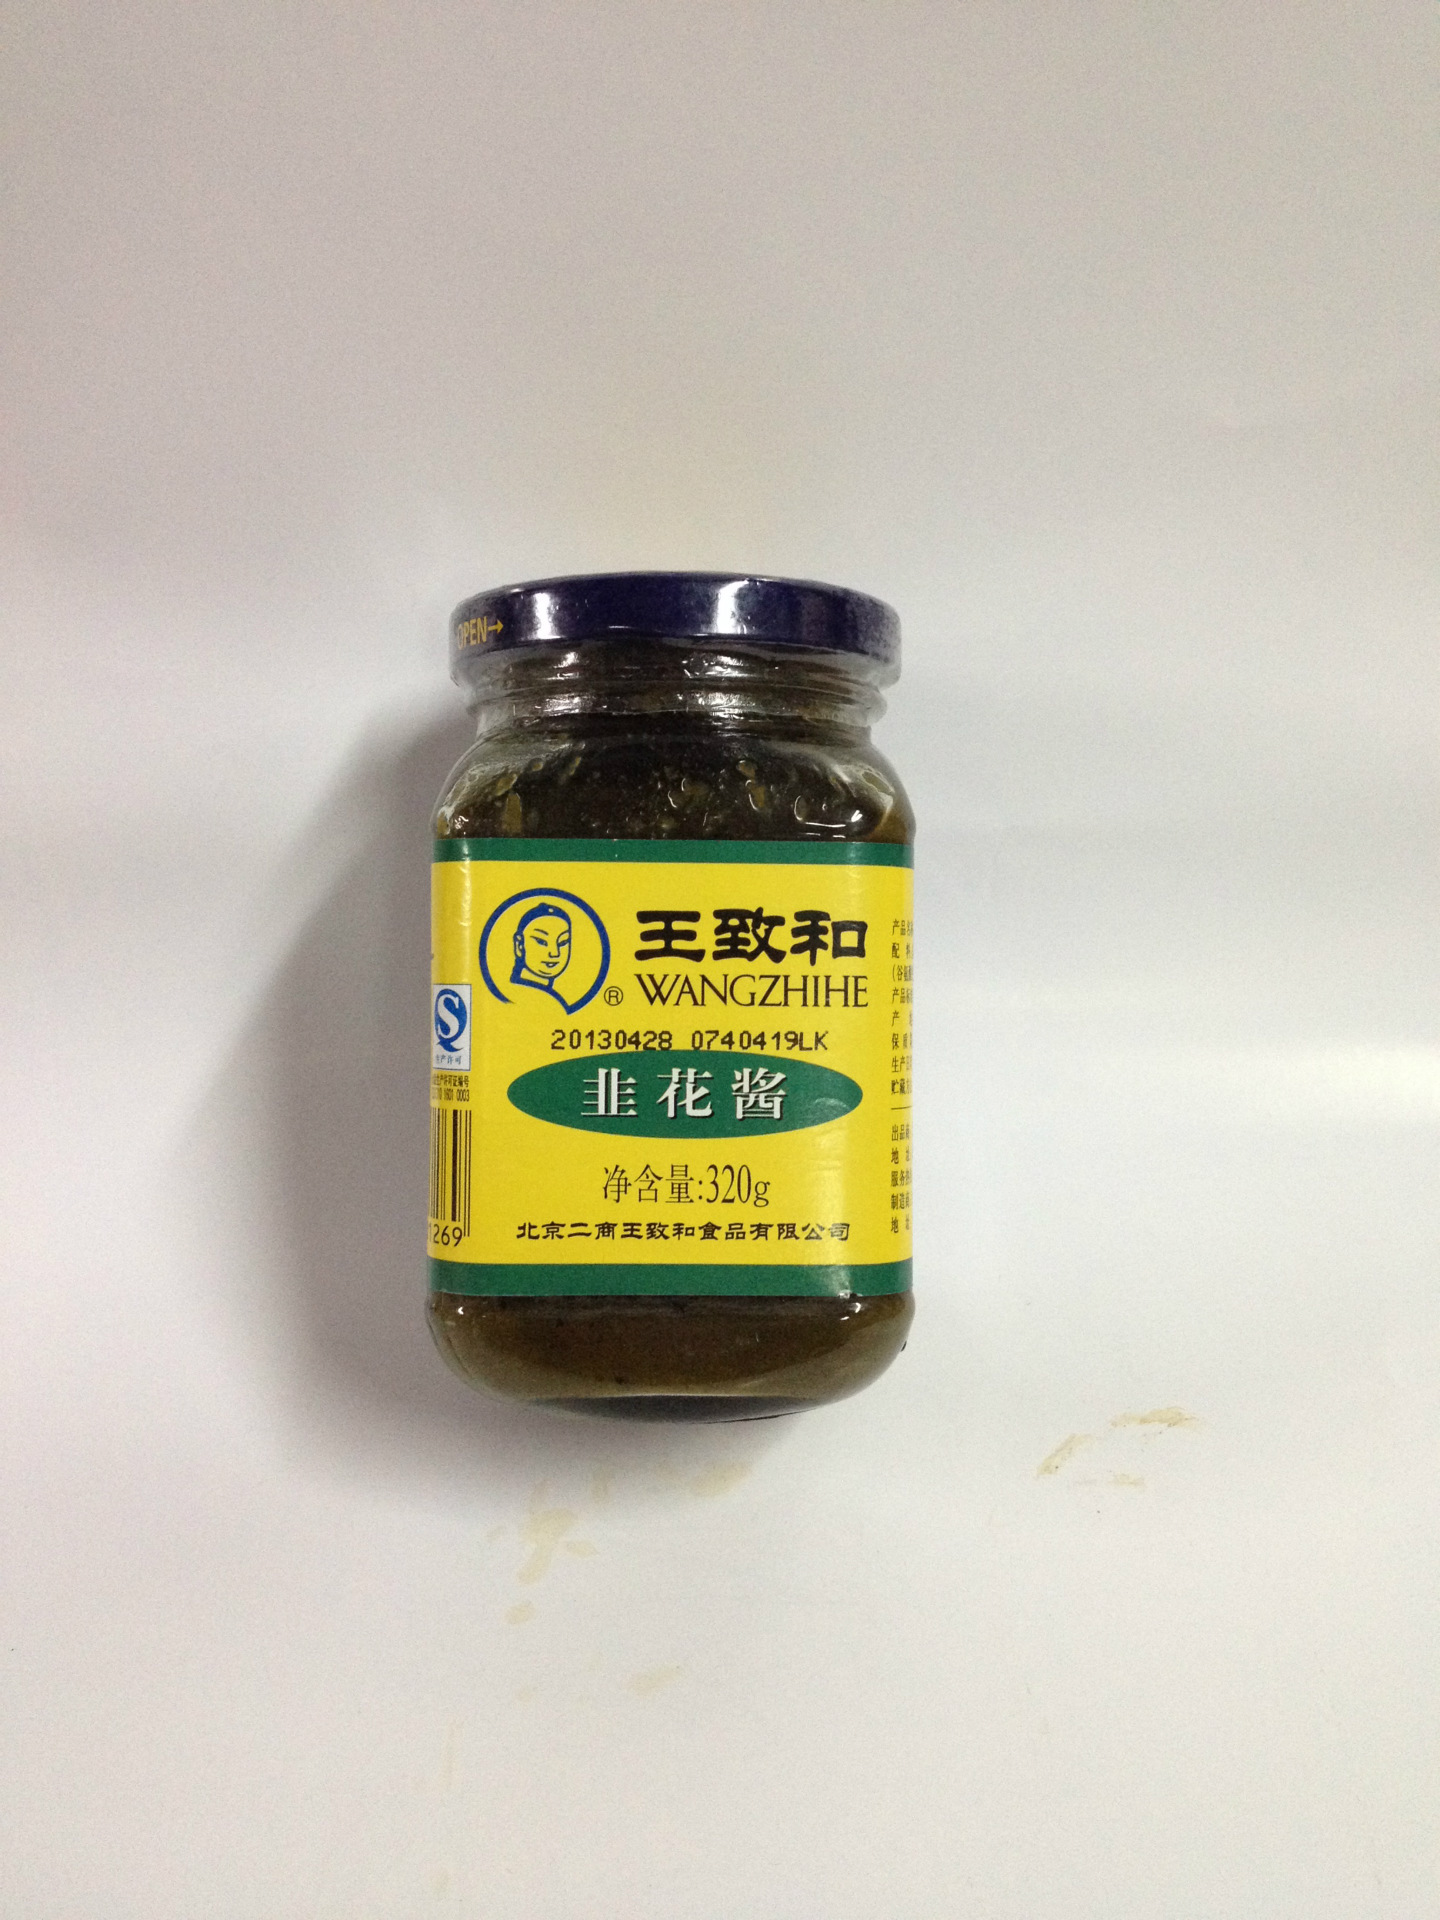 北京一级经销商批发供应 王致和320g*24瓶 韭花酱(韭菜花)